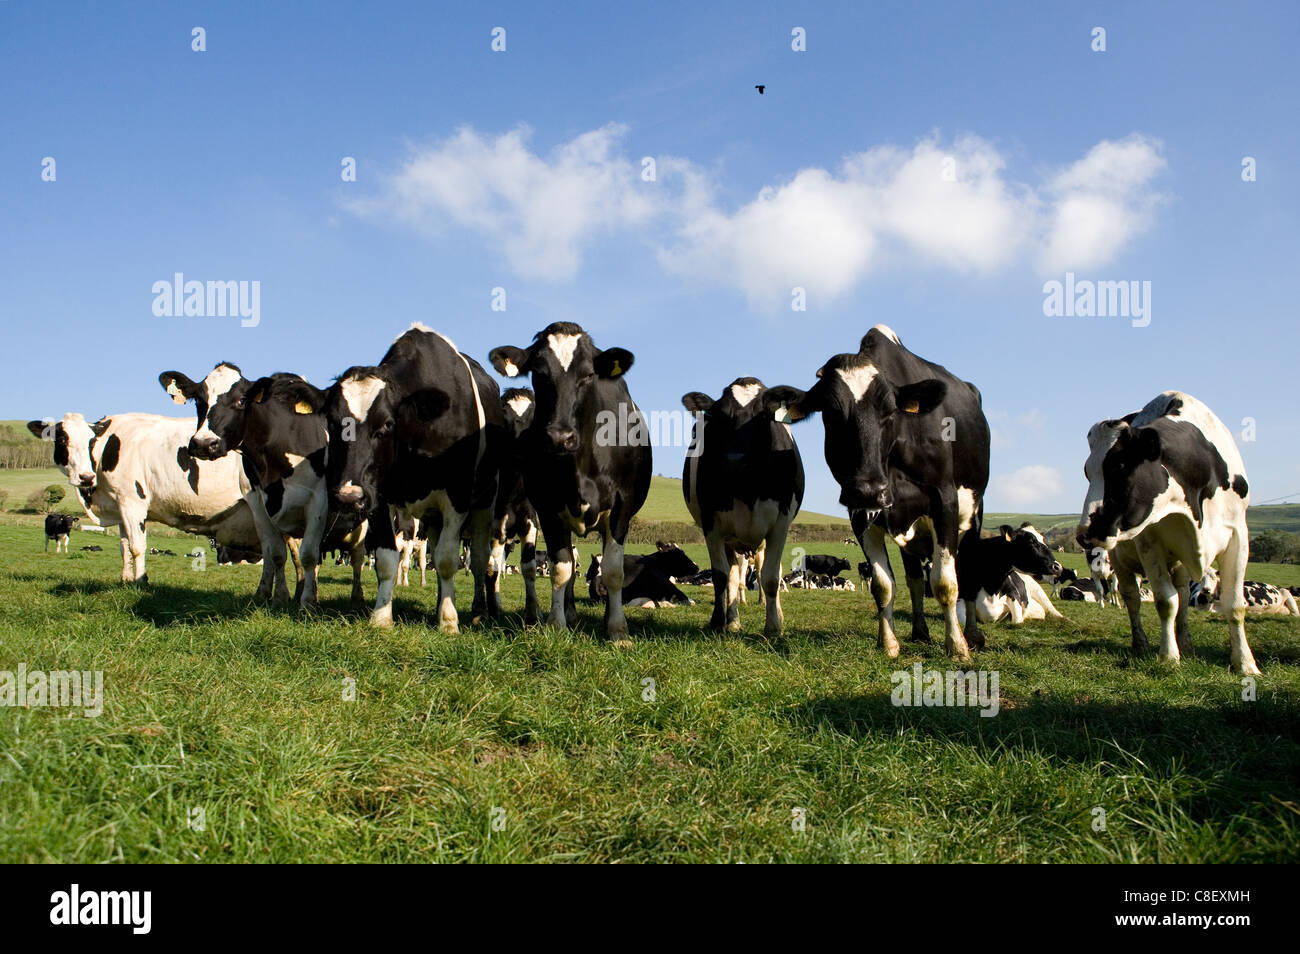 Les bovins laitiers Groupe d'adultes dans un champ Dorset, UK Banque D'Images